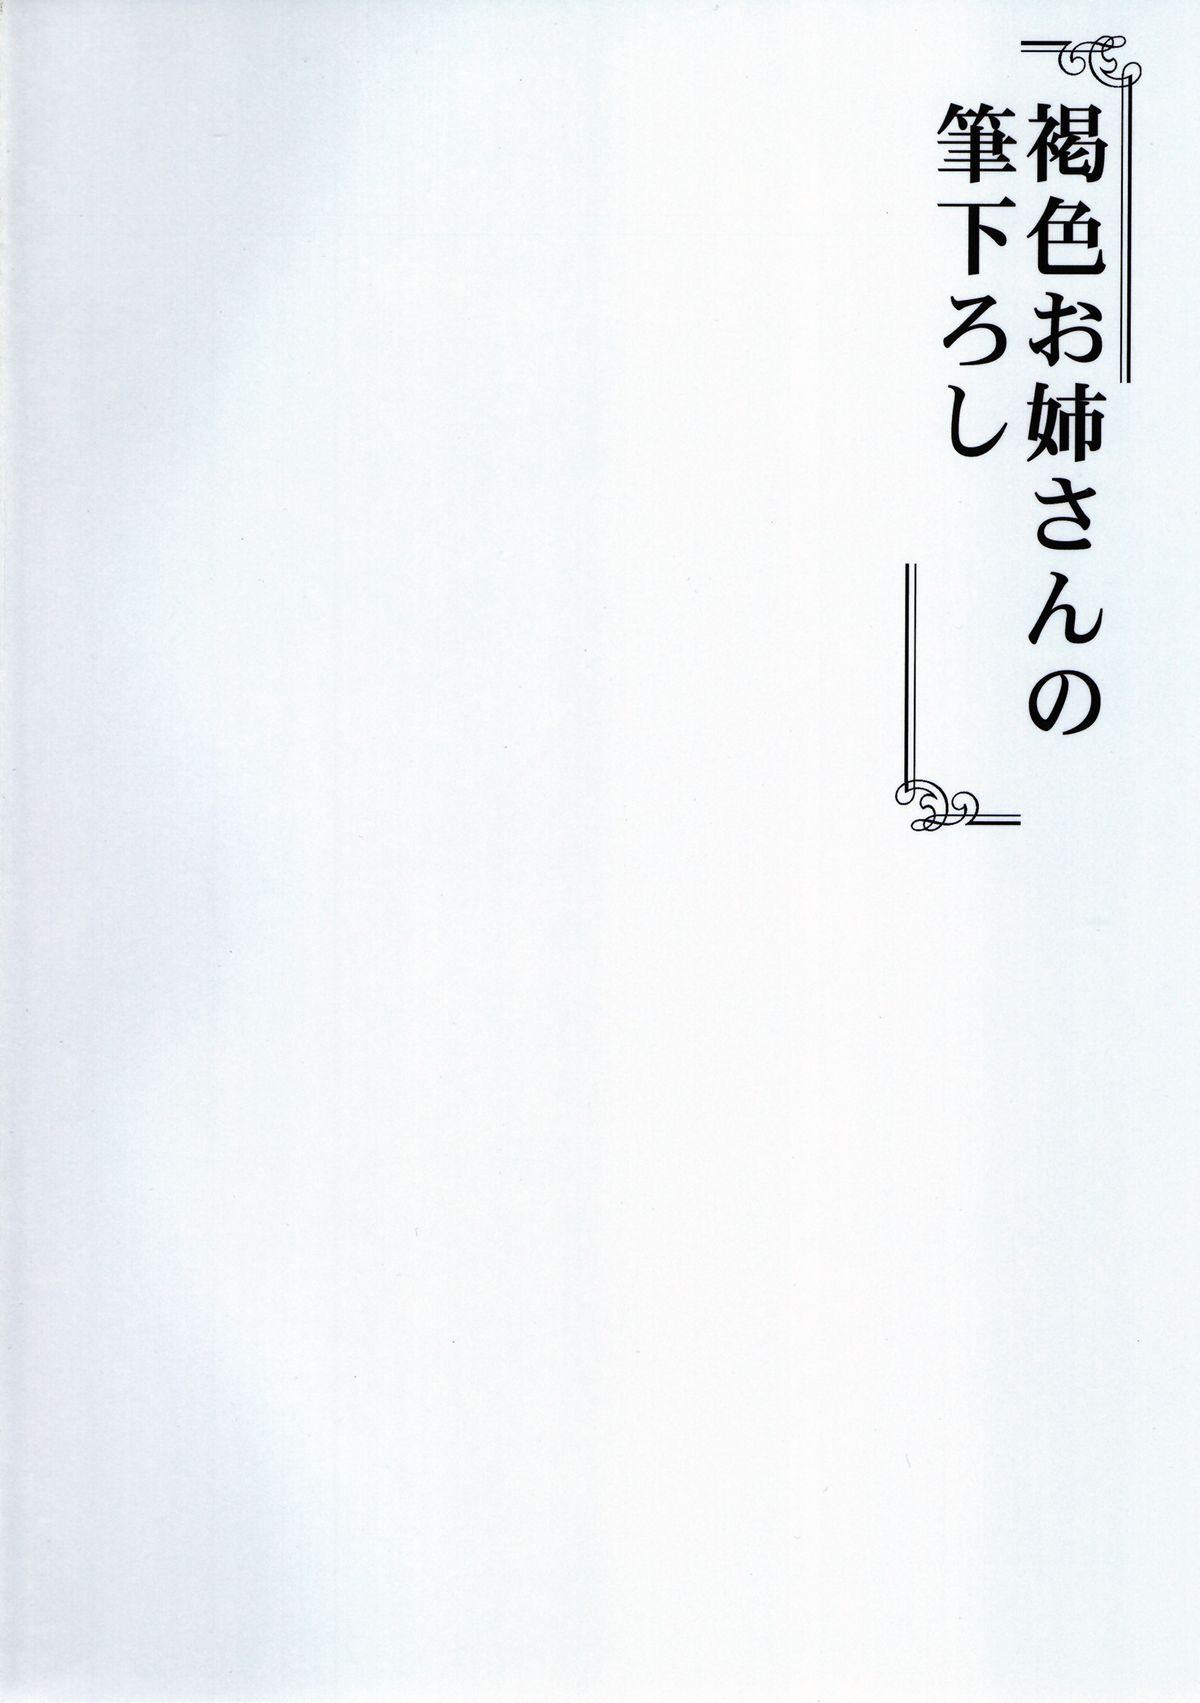 Bunduda Kasshoku Oneesan no Fudeoroshi Ver. 5 Backshots - Page 2